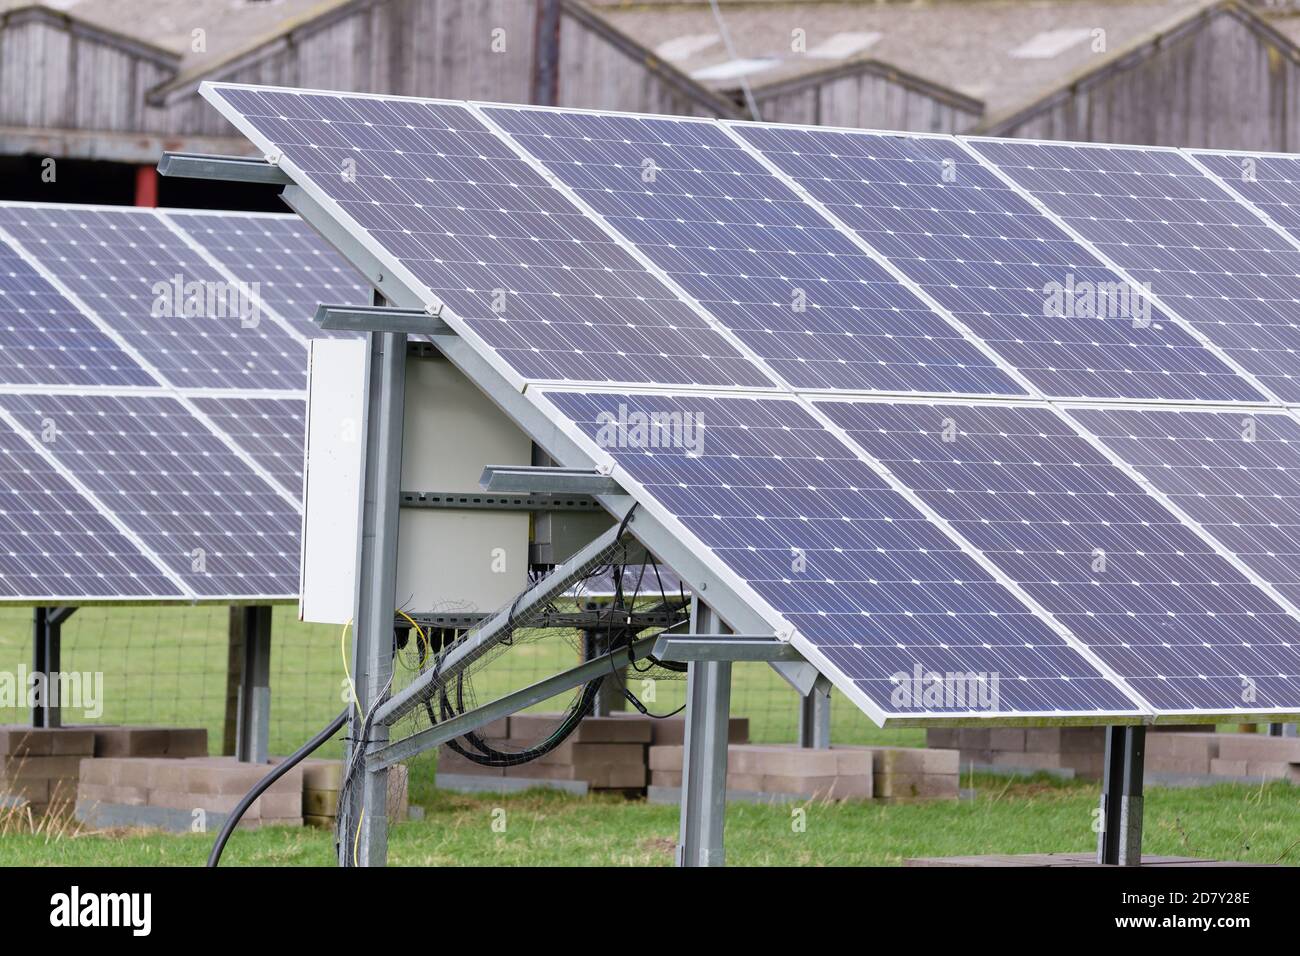 Paneles solares en una granja ganadera que proporciona energía limpia y sostenible y la reducción de las emisiones en la agricultura Foto de stock